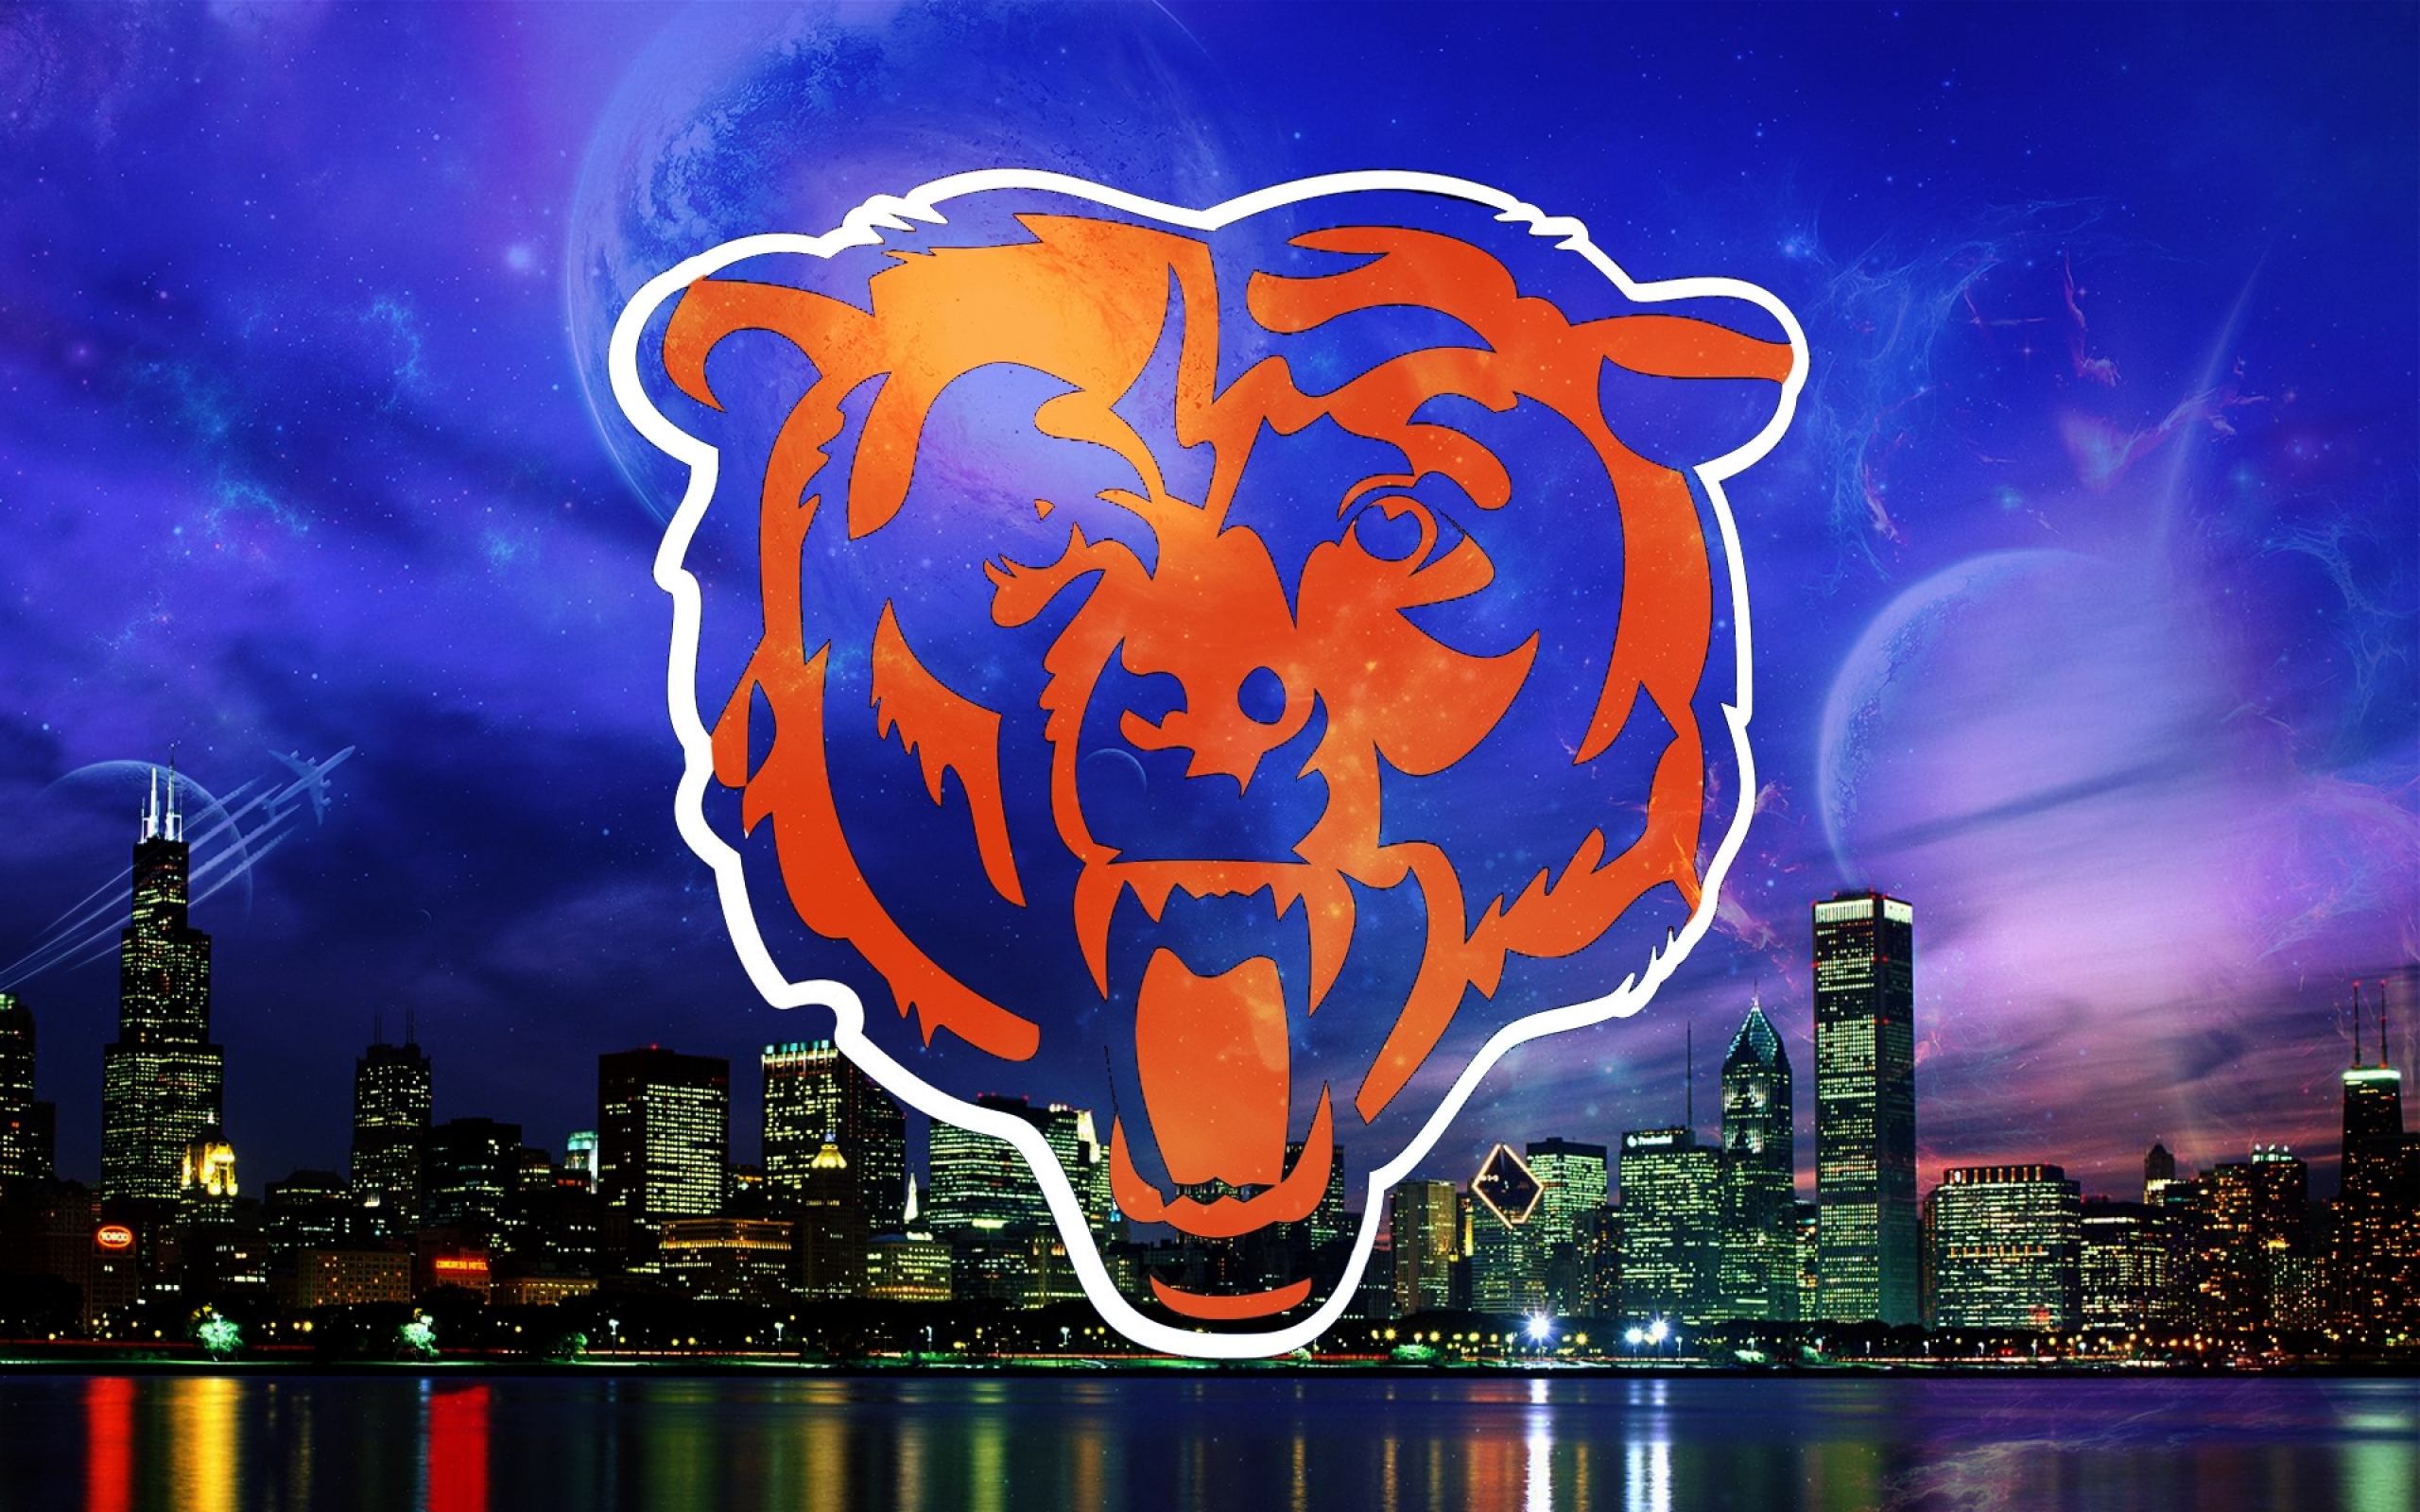 Free HD Chicago Bears Wallpaper | PixelsTalk.Net